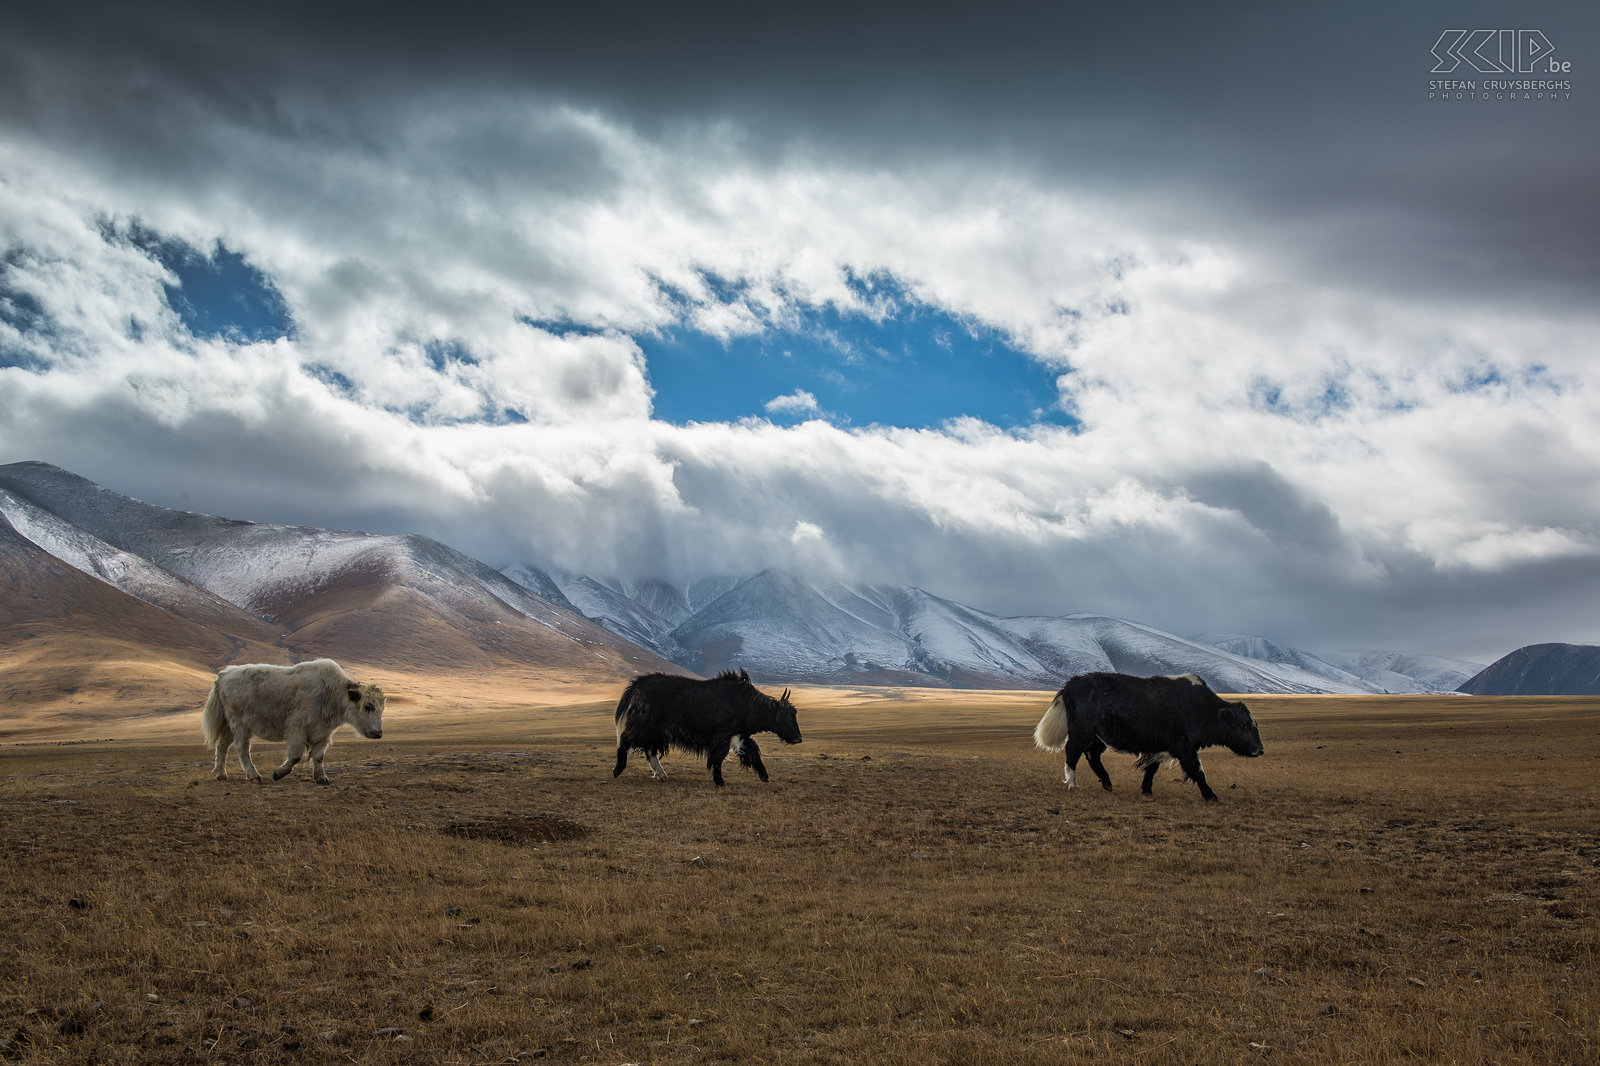 Altai - Jaks Het Altai gebergte kent toppen van 4000 meter hoog en is het hoogste gebergte in Mongolië. Het was koud in het Altai gebergte en de eerste dagen waren er sneeuw- en regenbuien en veel dreigende wolken. In deze regio leven de Kazachen, de kleinste minderheid van de Mongoolse bevolking. Deze nomaden houden voornamelijk jaks, geiten en kamelen. Stefan Cruysberghs